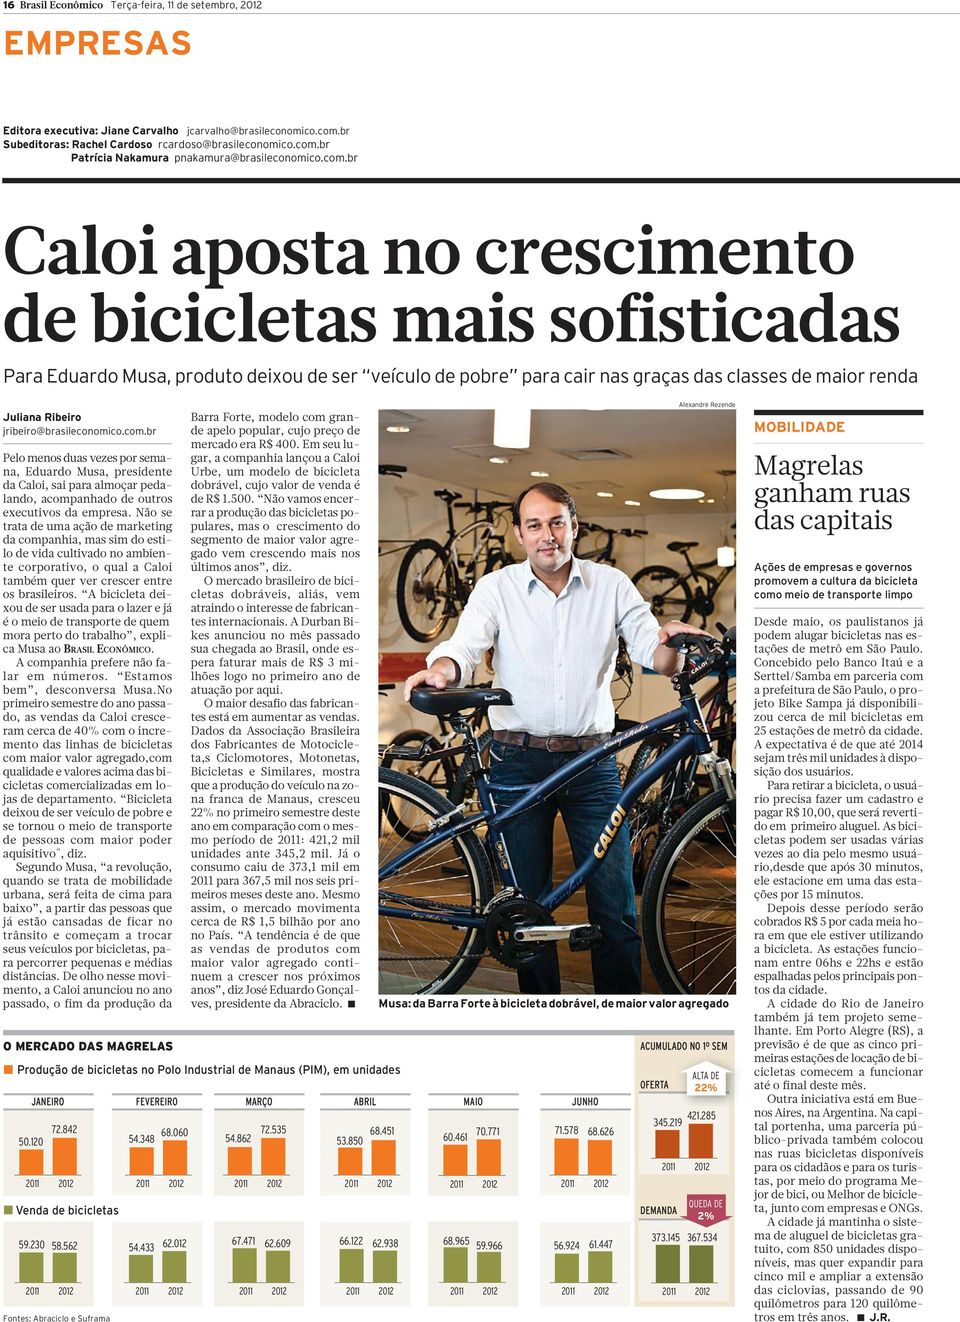 jribeiro@brasileconomico.com.br Pelo menos duas vezes por semana, Eduardo Musa, presidente da Caloi, sai para almoçar pedalando, acompanhado de outros executivos da empresa.